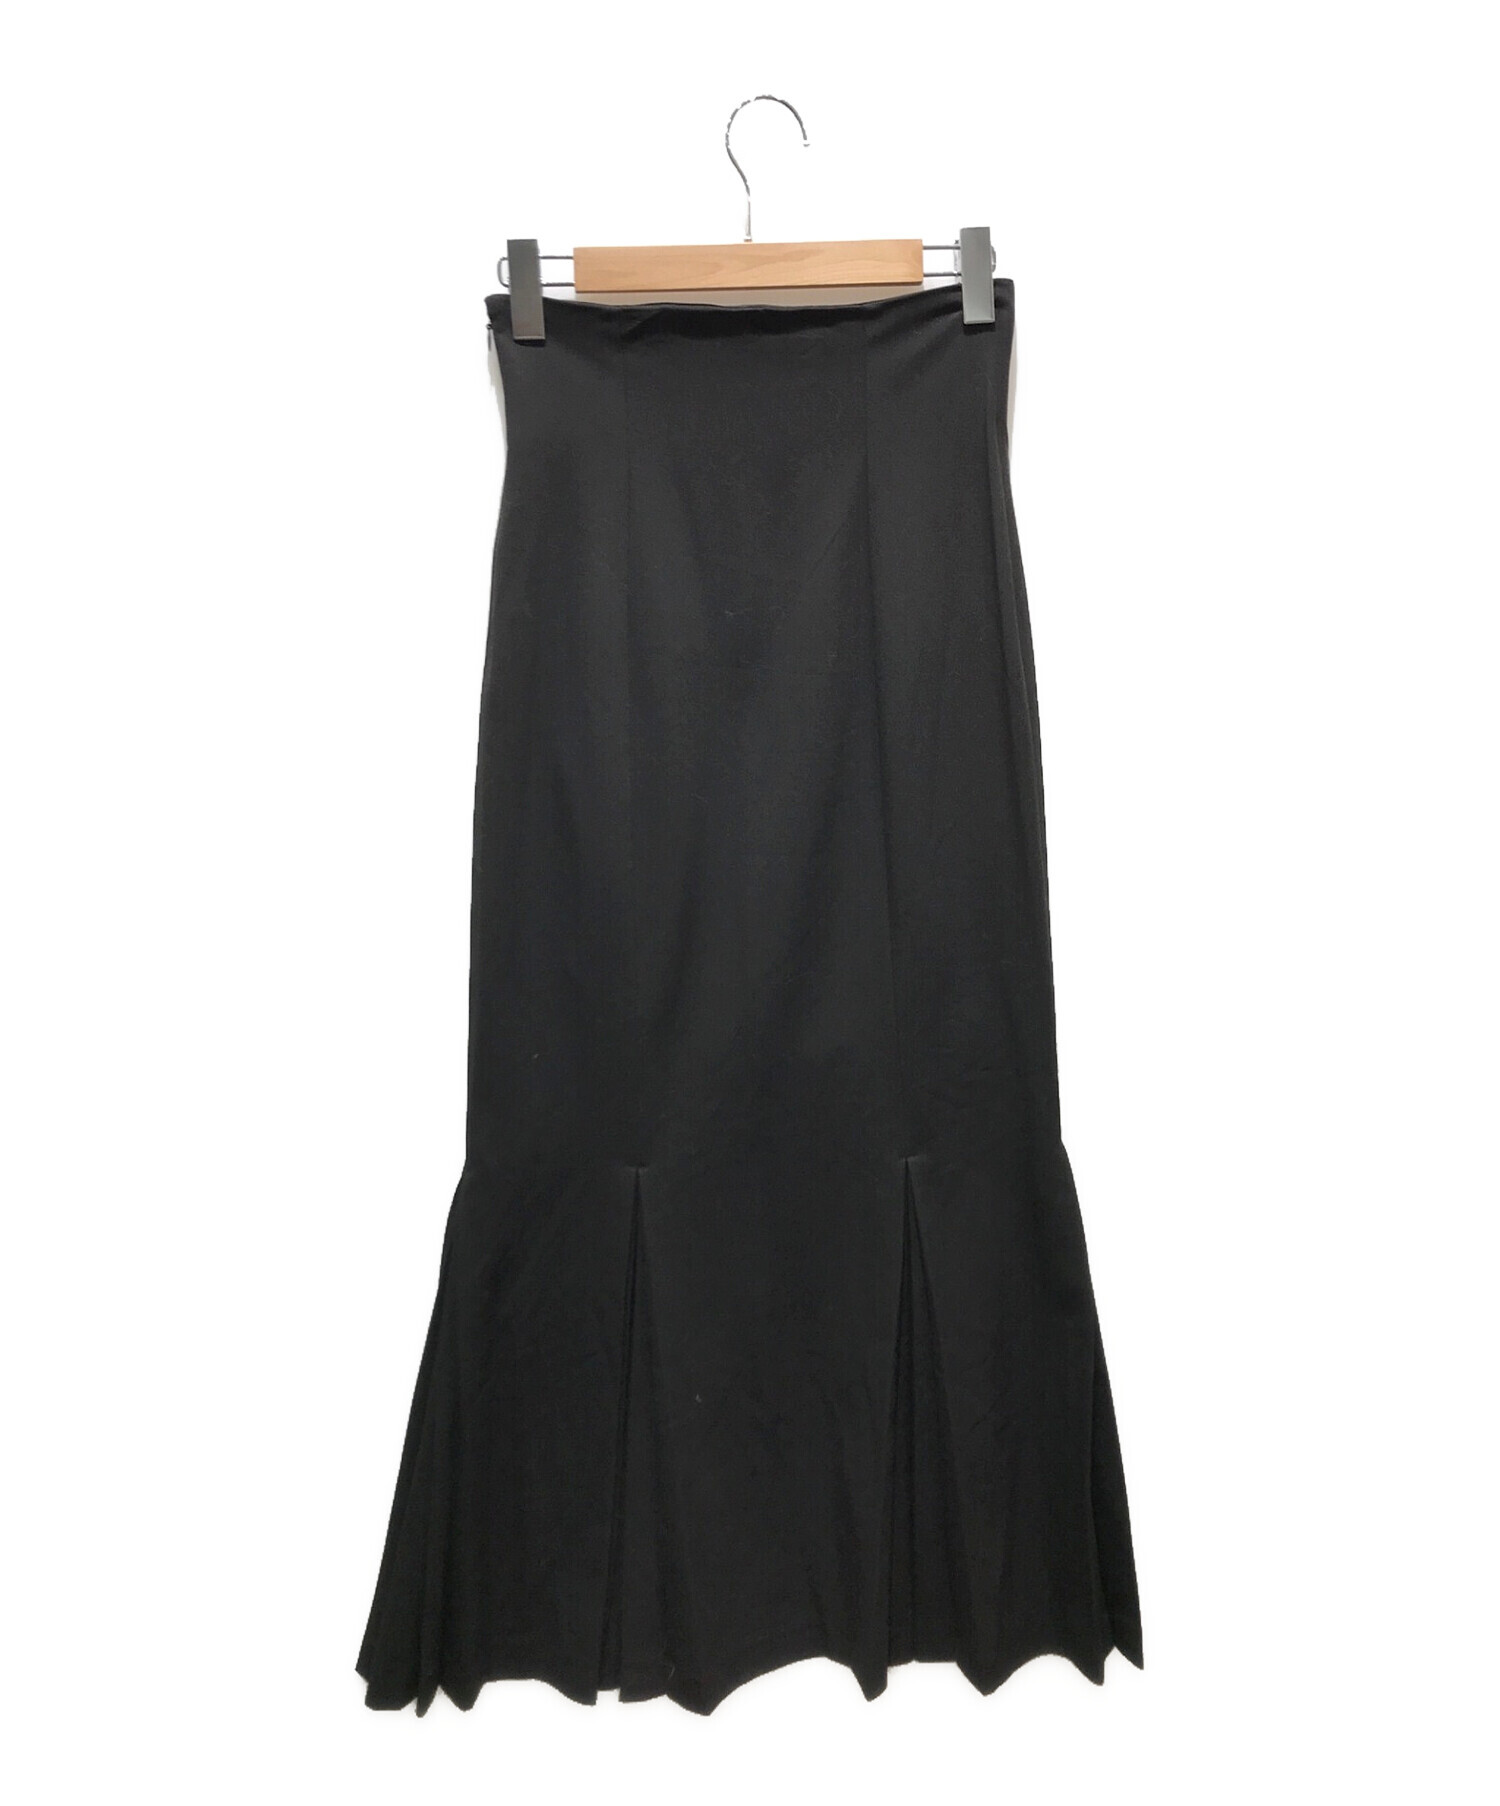 Louren (ローレン) mermaid pleats skirt　Lo-201-54 ブラック サイズ:M 未使用品